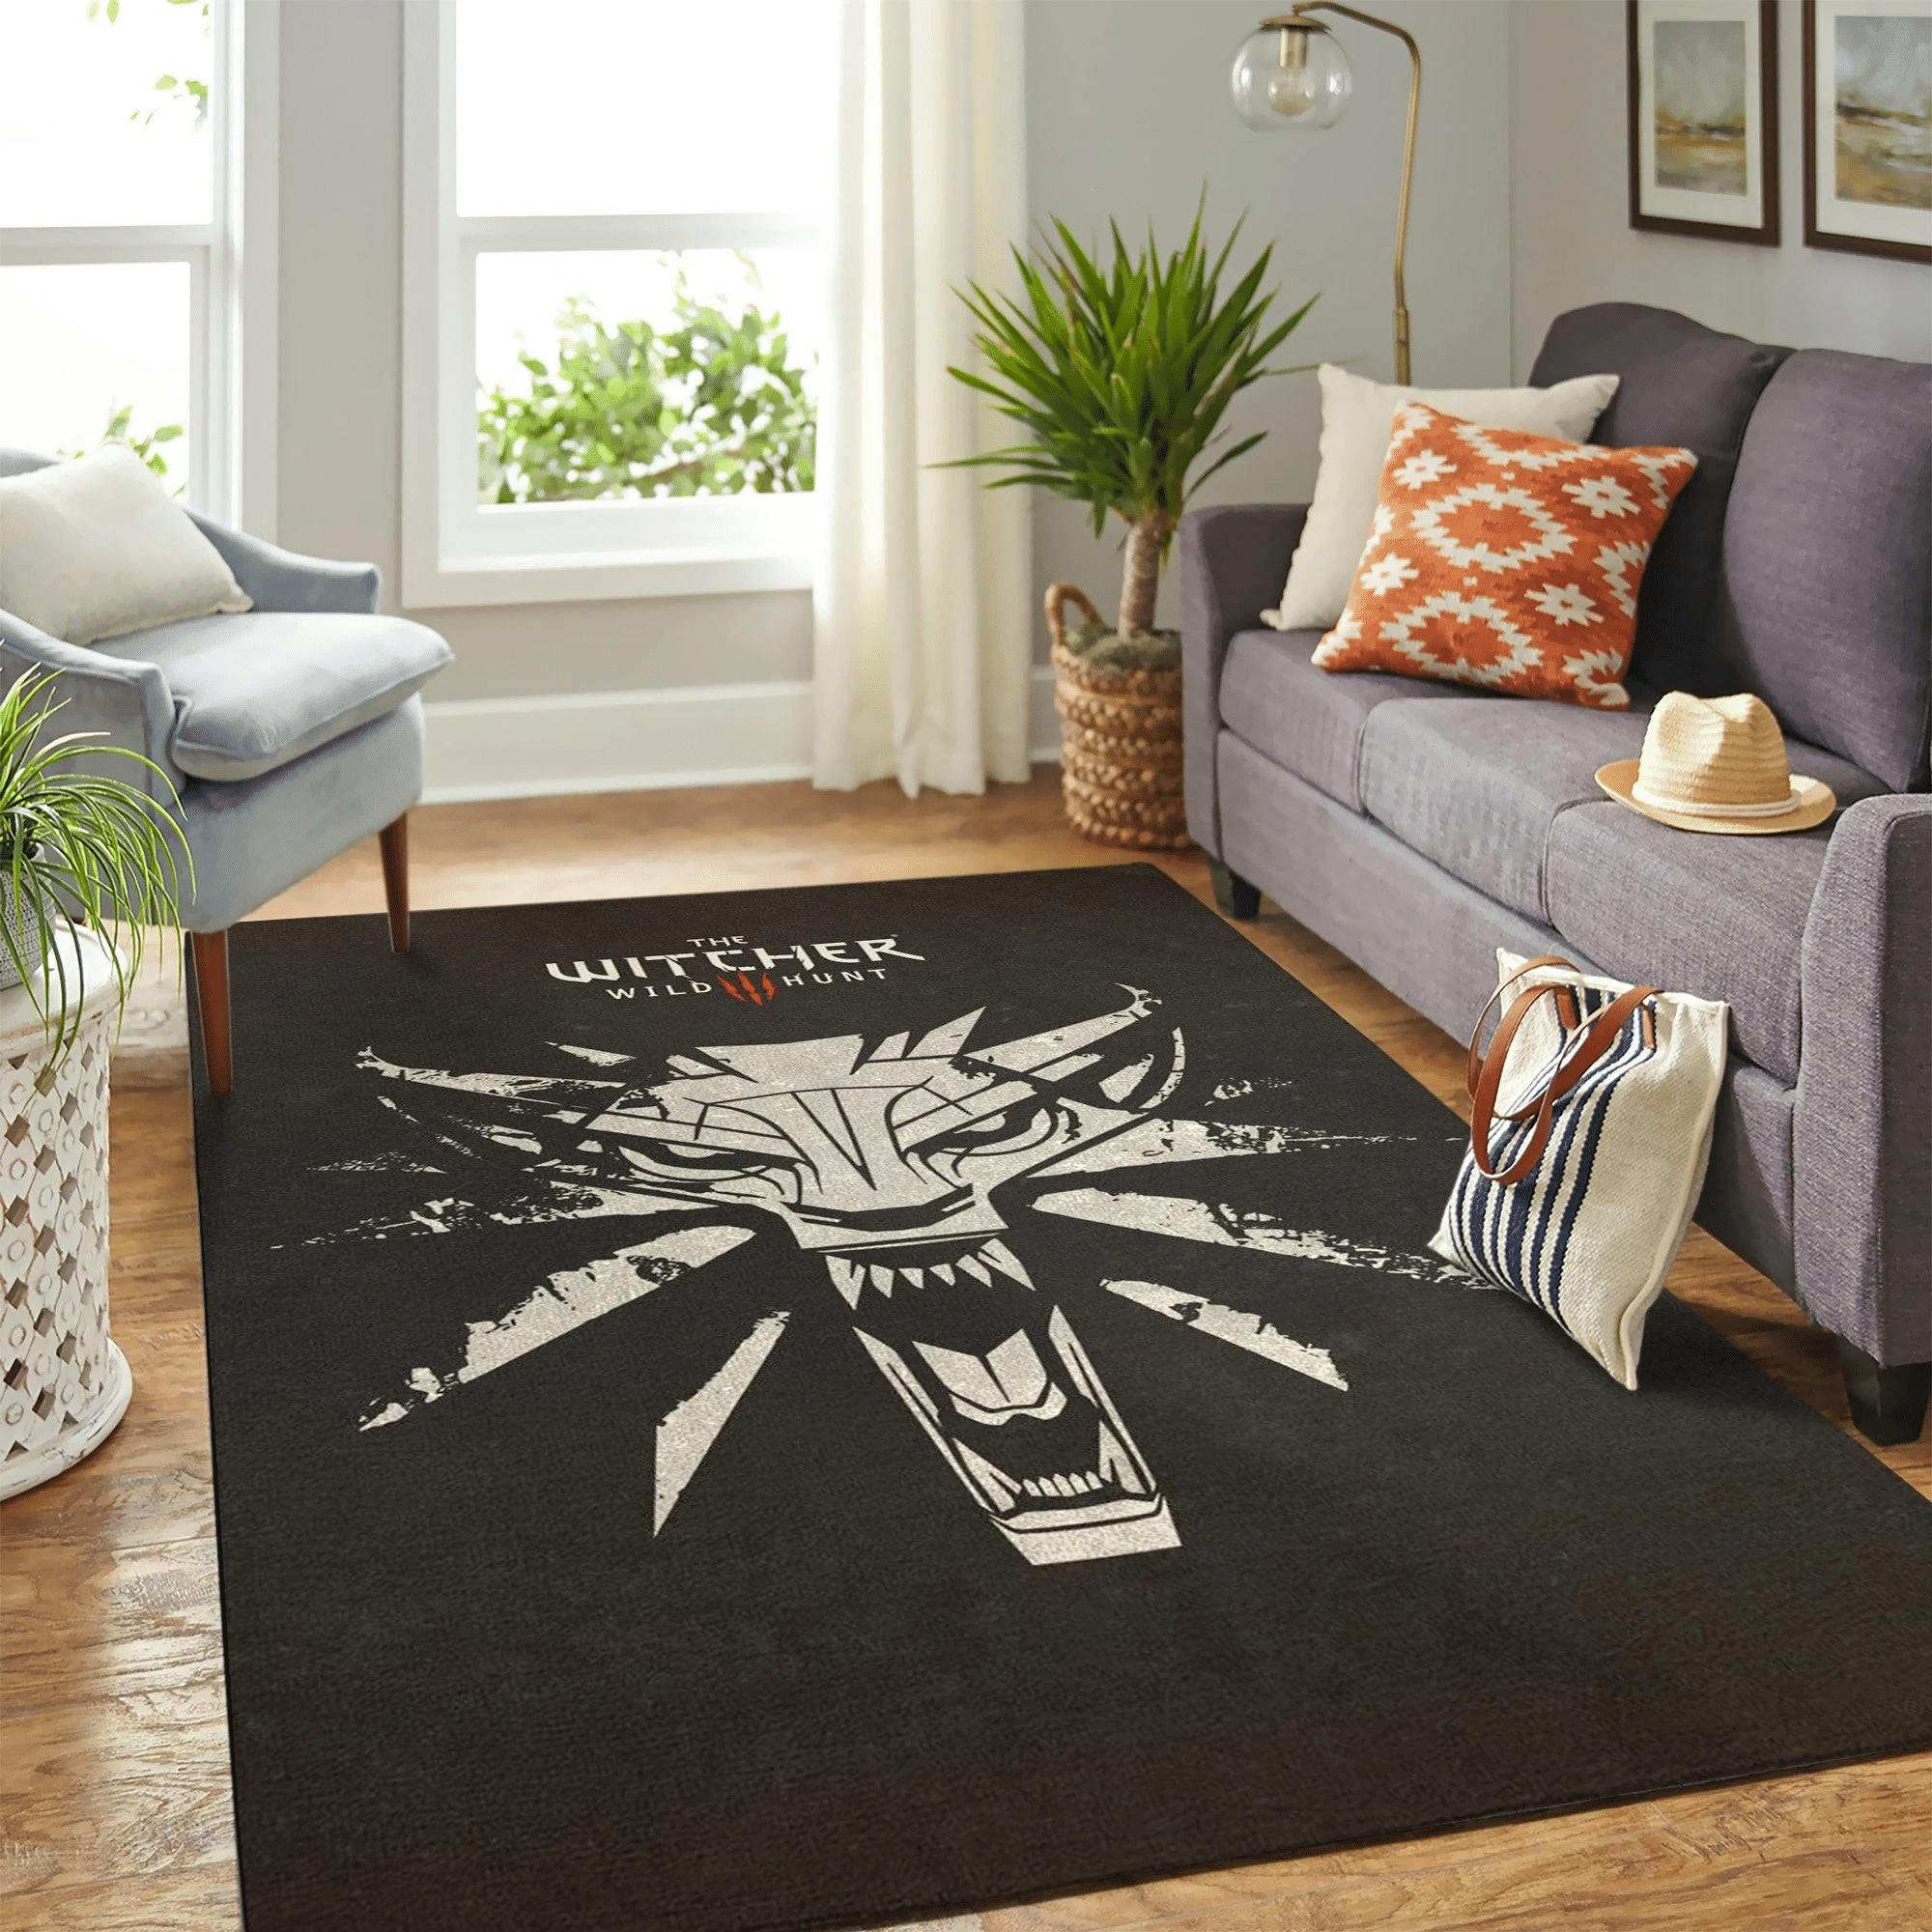 The Witcher Emblem Carpet Floor Area Rug Chrismas Gift - Indoor Outdoor Rugs